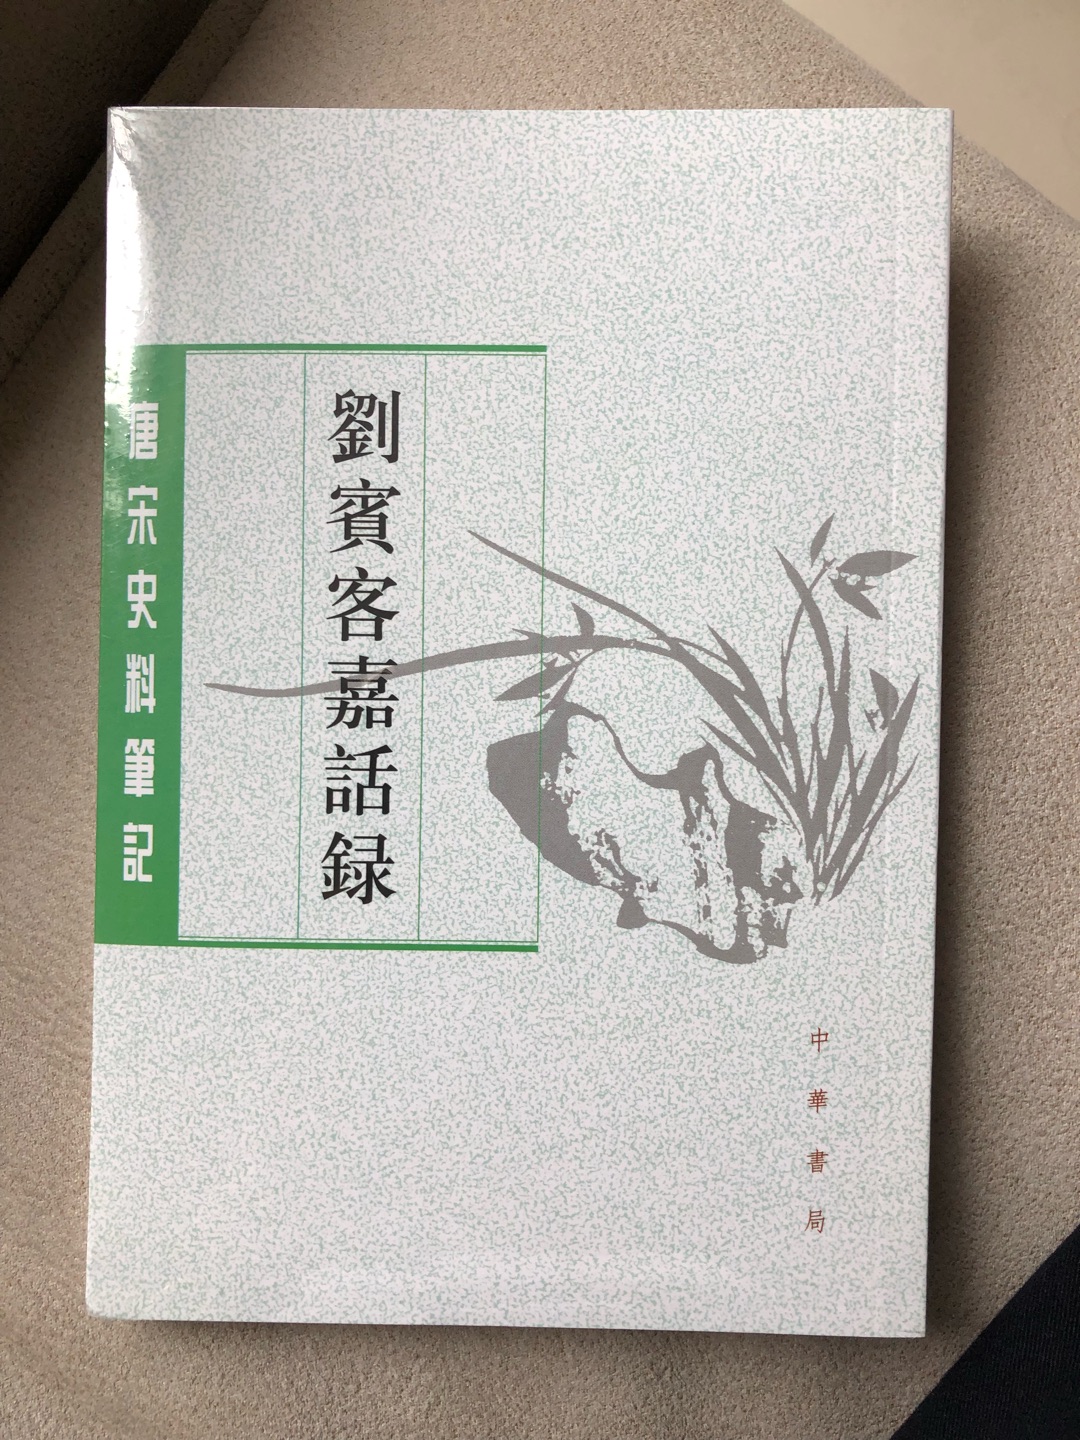 中华书局出版，唐宋笔记史料，简装竖排繁体字，印制质量尚可。活动时收入